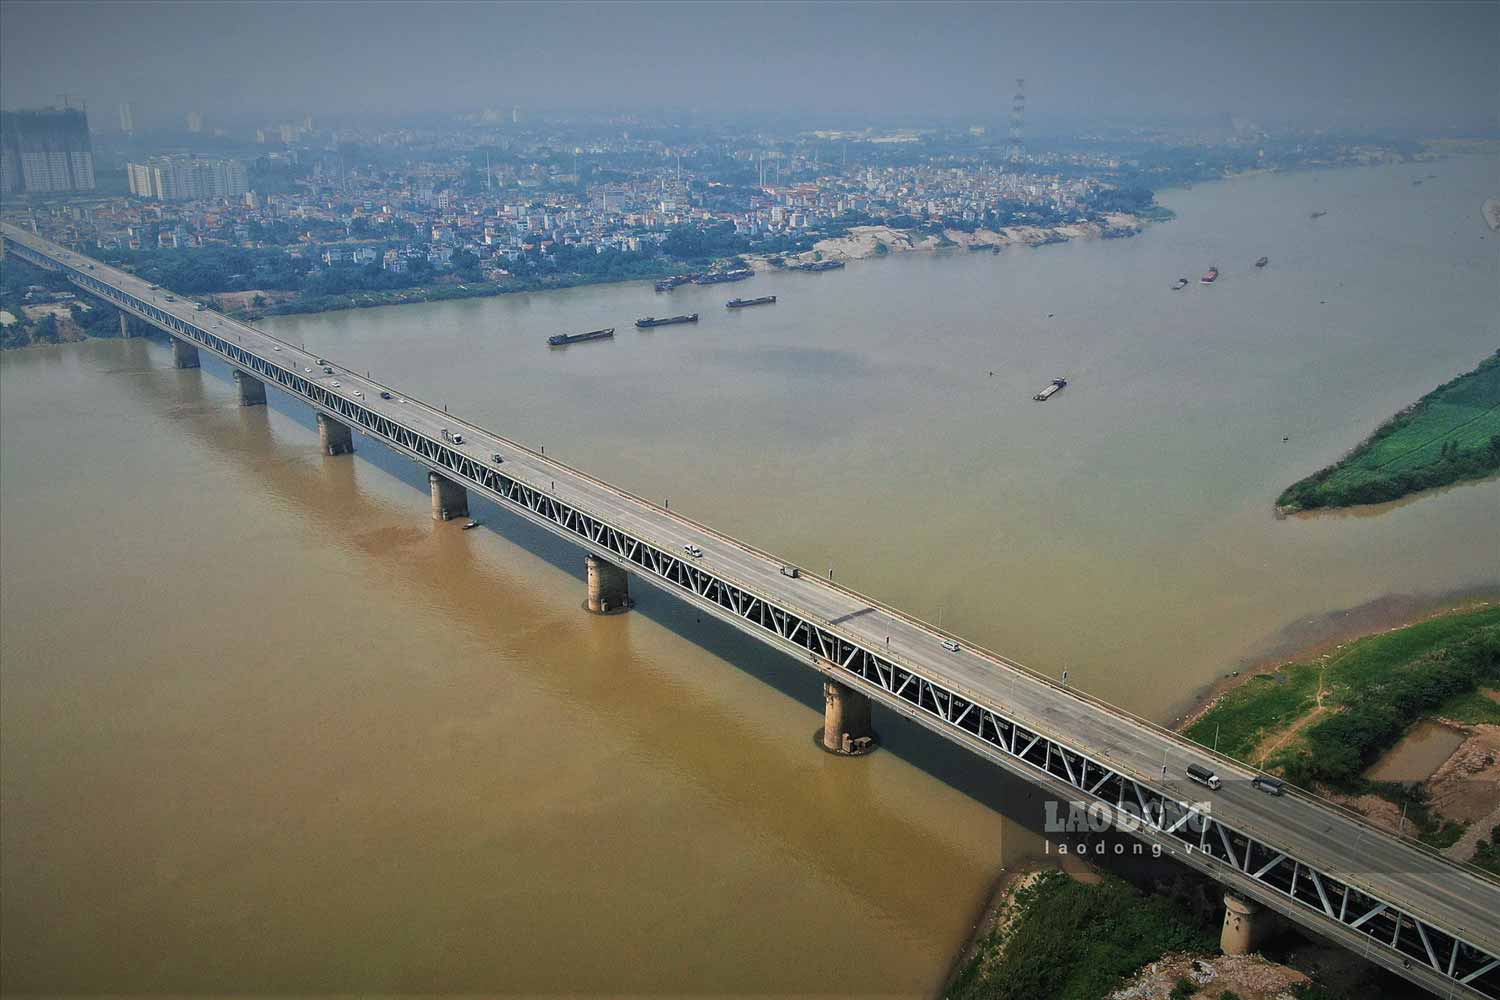 Cầu Thăng Long bắc qua sông Hồng, là đường nối sân bay quốc tế Nội Bài với nội thành Hà Nội, Công trình thế kỷ của tình hữu nghị Việt - Xô được khởi công xây dựng năm 1974 và khánh thành năm 1985. (Ảnh: Quang Minh)